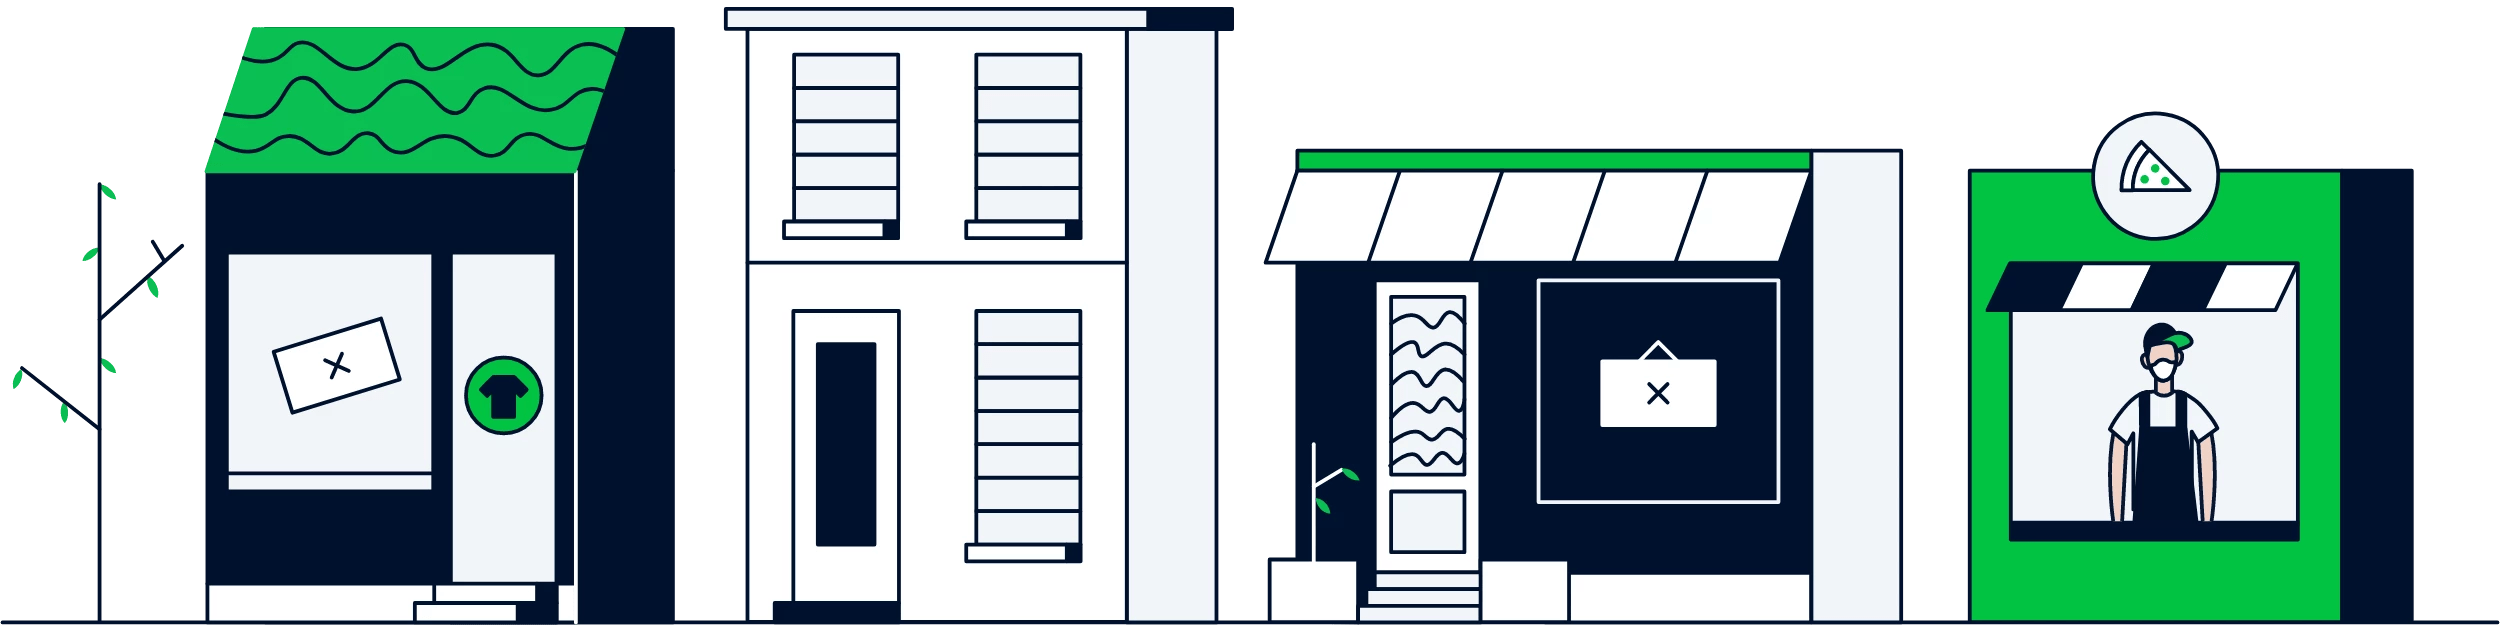 Illustratie van gesloten winkelstraat met een open voedselverkoper